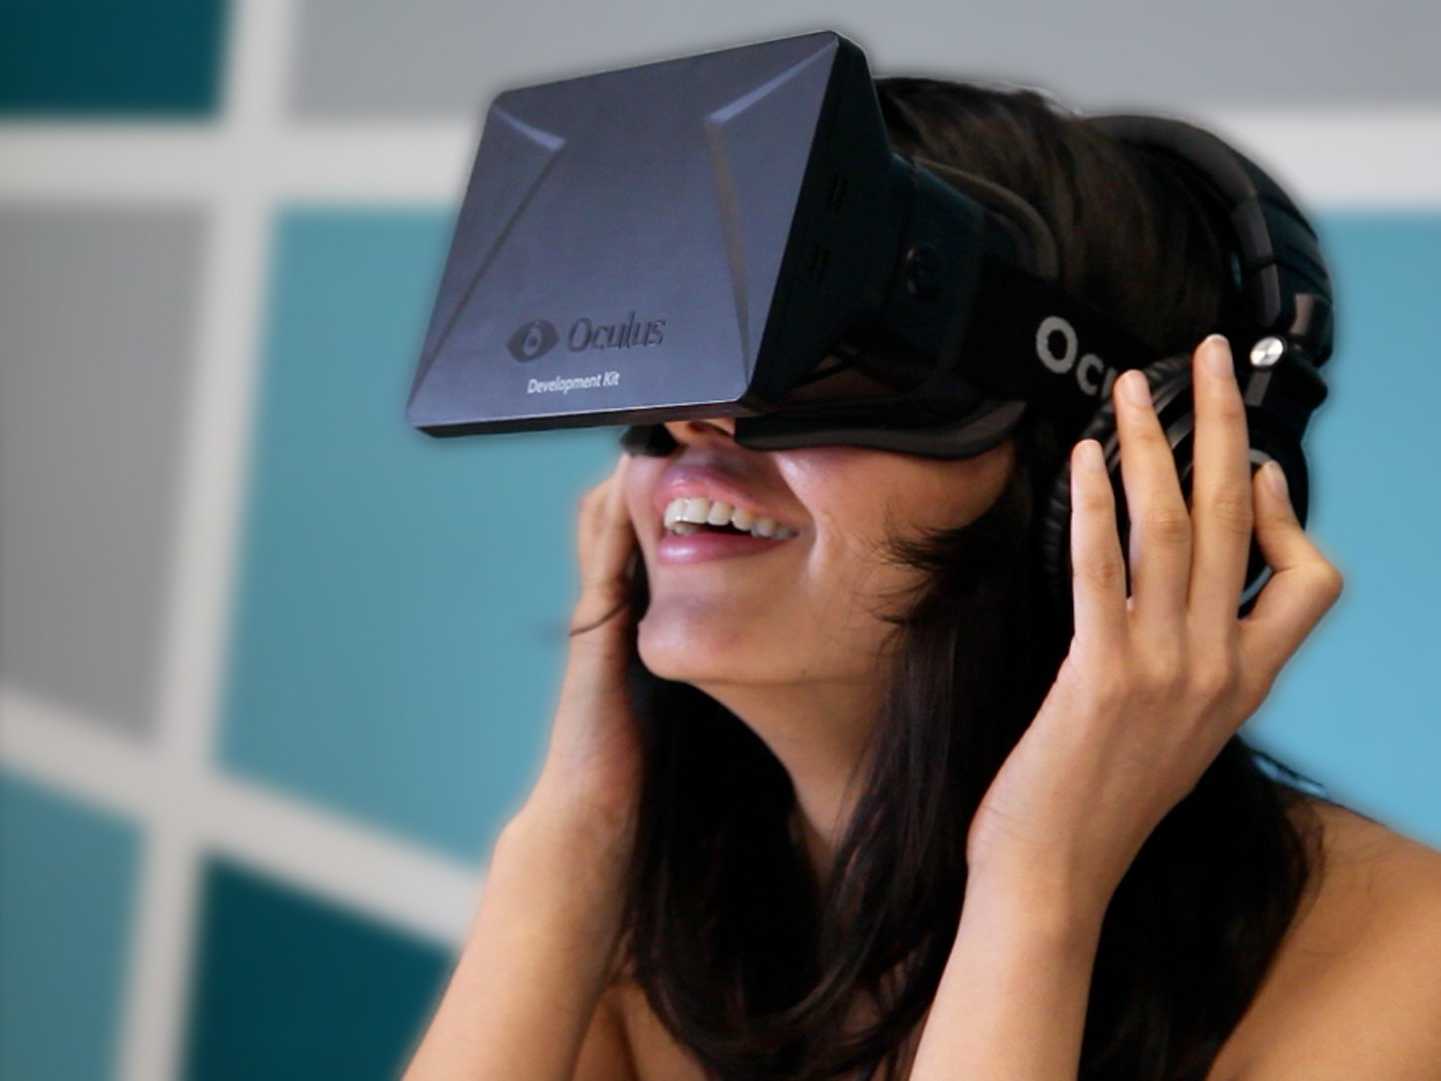 Vì sao Oculus VR đầu quân cho Facebook?